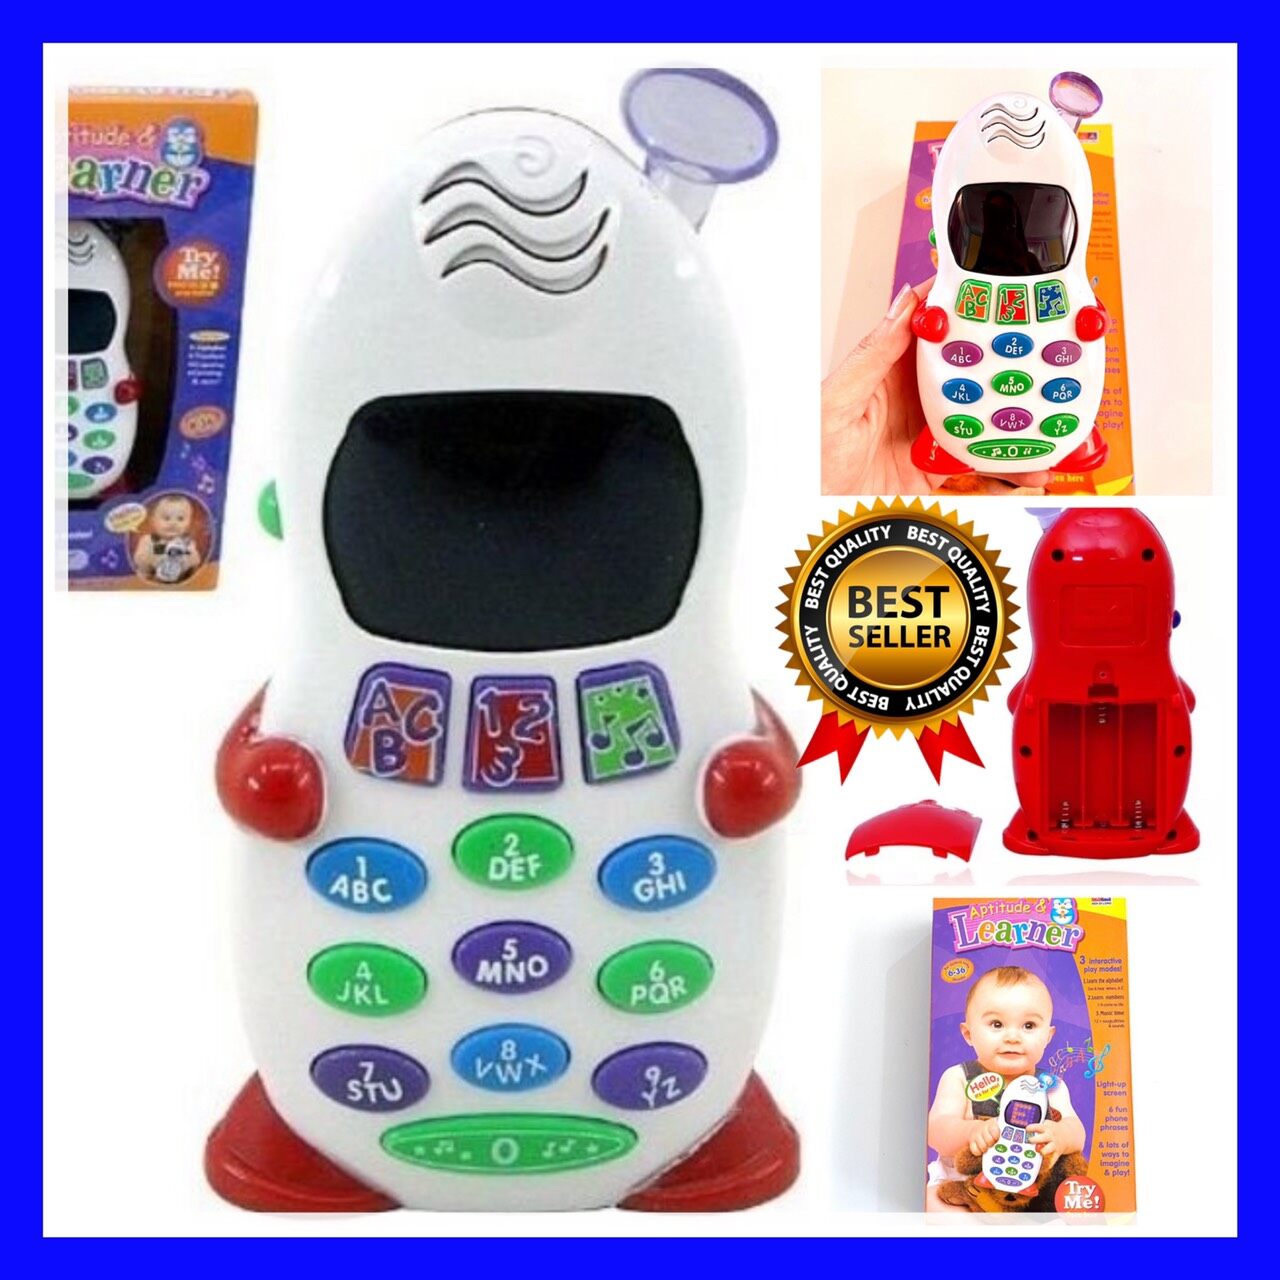 โทรศัพท์เด็ก ของเล่นเสริมพัฒนาการ ( โทรศัพท์ ดิจิตอลสีขาว )  ของเล่นเด็กมีเสียง โทรศัพท์มือถือคุณหนูน้อย สอนภาษาอังกฤษ มือถือเด็ก